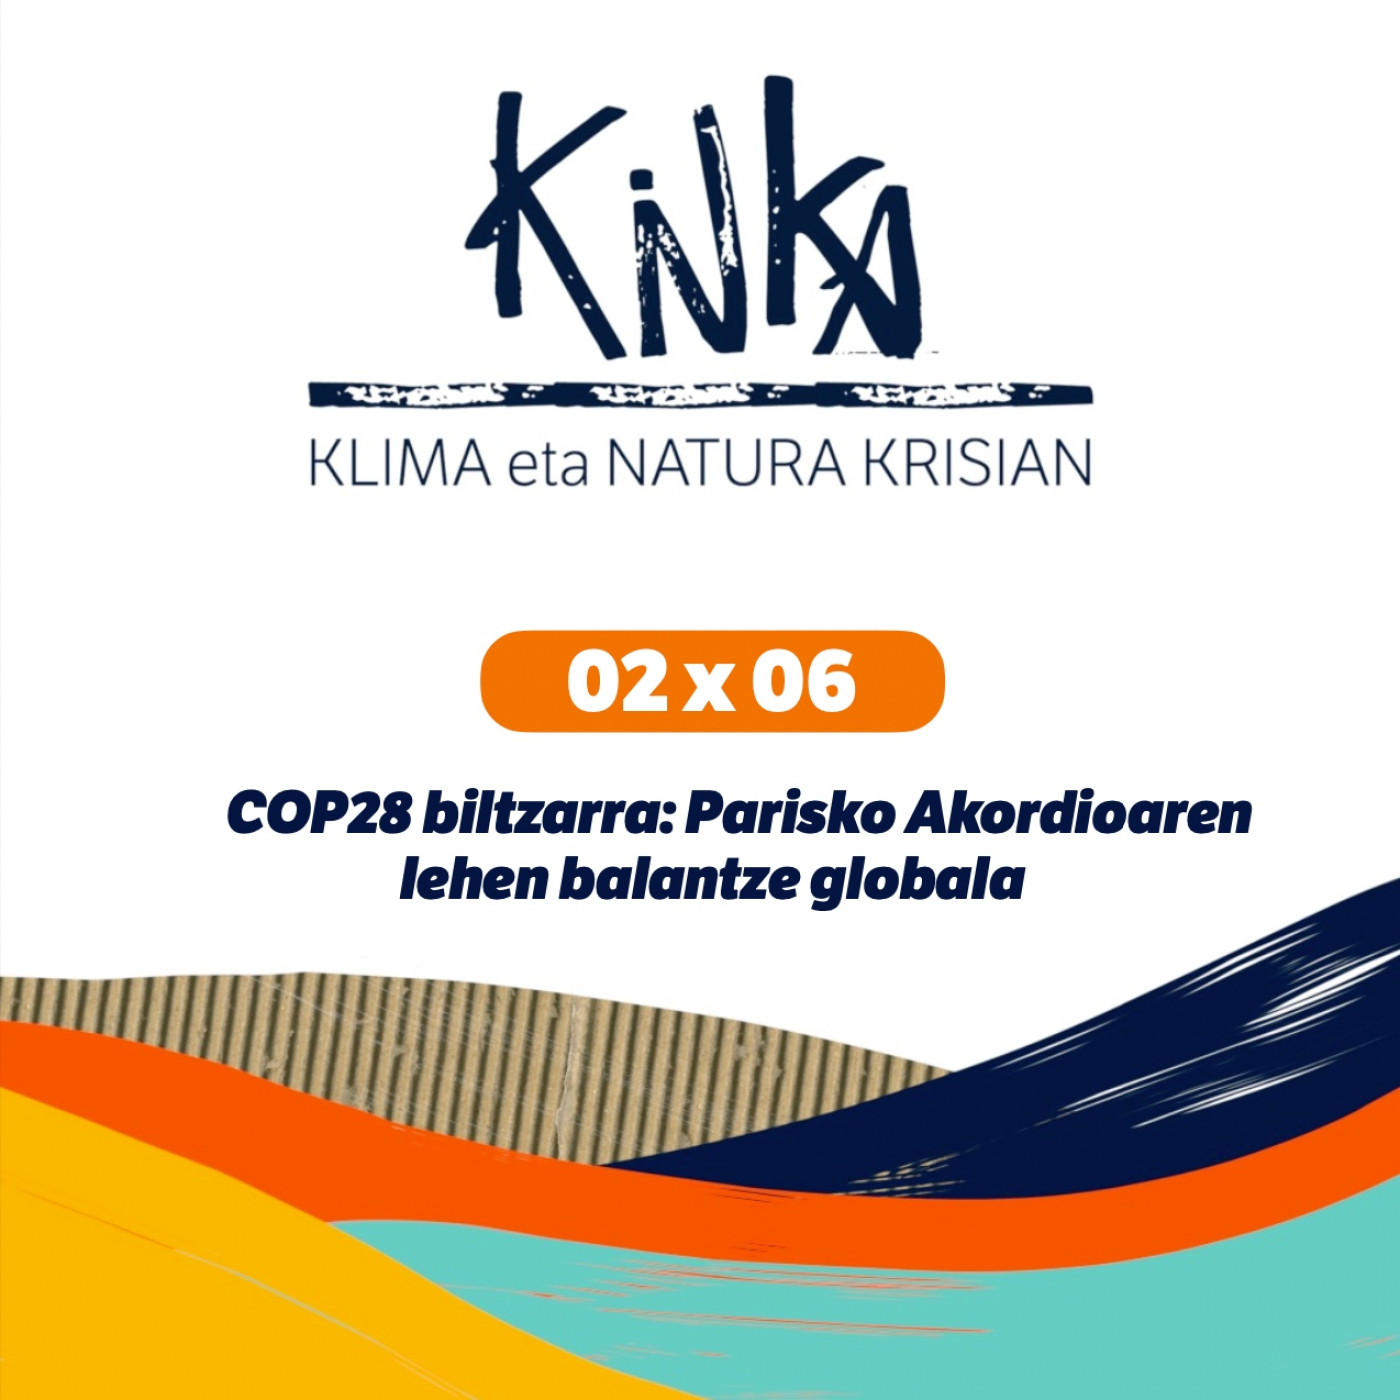 COP28 biltzarra: Parisko Akordioaren lehen balantze globala